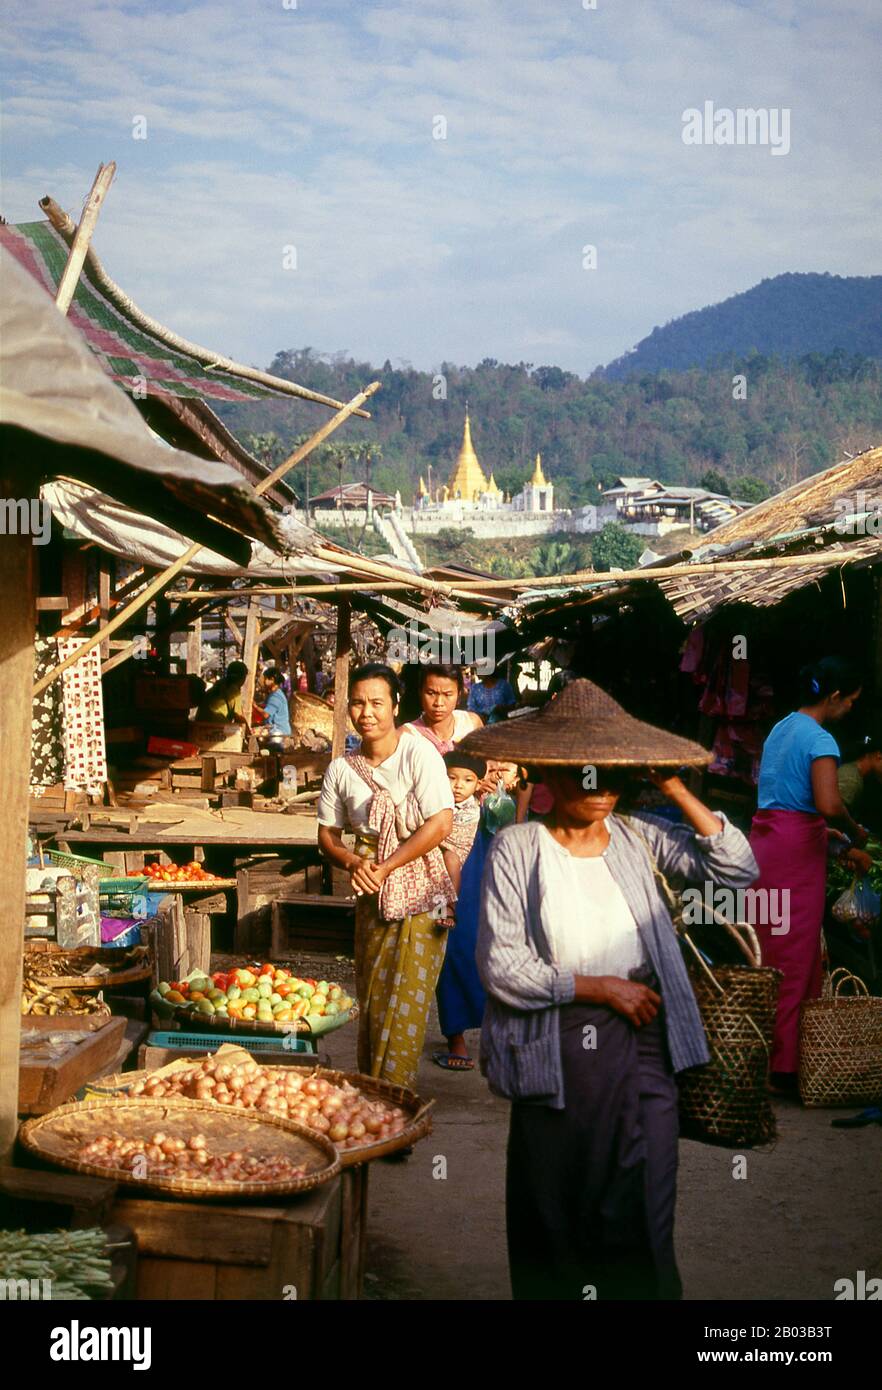 Notevole per la loro abilità militare, la loro ricettività al cristianesimo, e la loro intricata rete di parentela, i Kachins sono una temeraria montagna che vive nelle remote colline del nord della Birmania e nelle periferie di India e Cina. 'Kachin' è in realtà una parola birmana che non esiste in nessuno dei dialetti locali. Ogni tribù di Kachin ha un nome diverso per sé e per i suoi vicini, ma nessuna parola per descrivere l'intero gruppo. Foto Stock